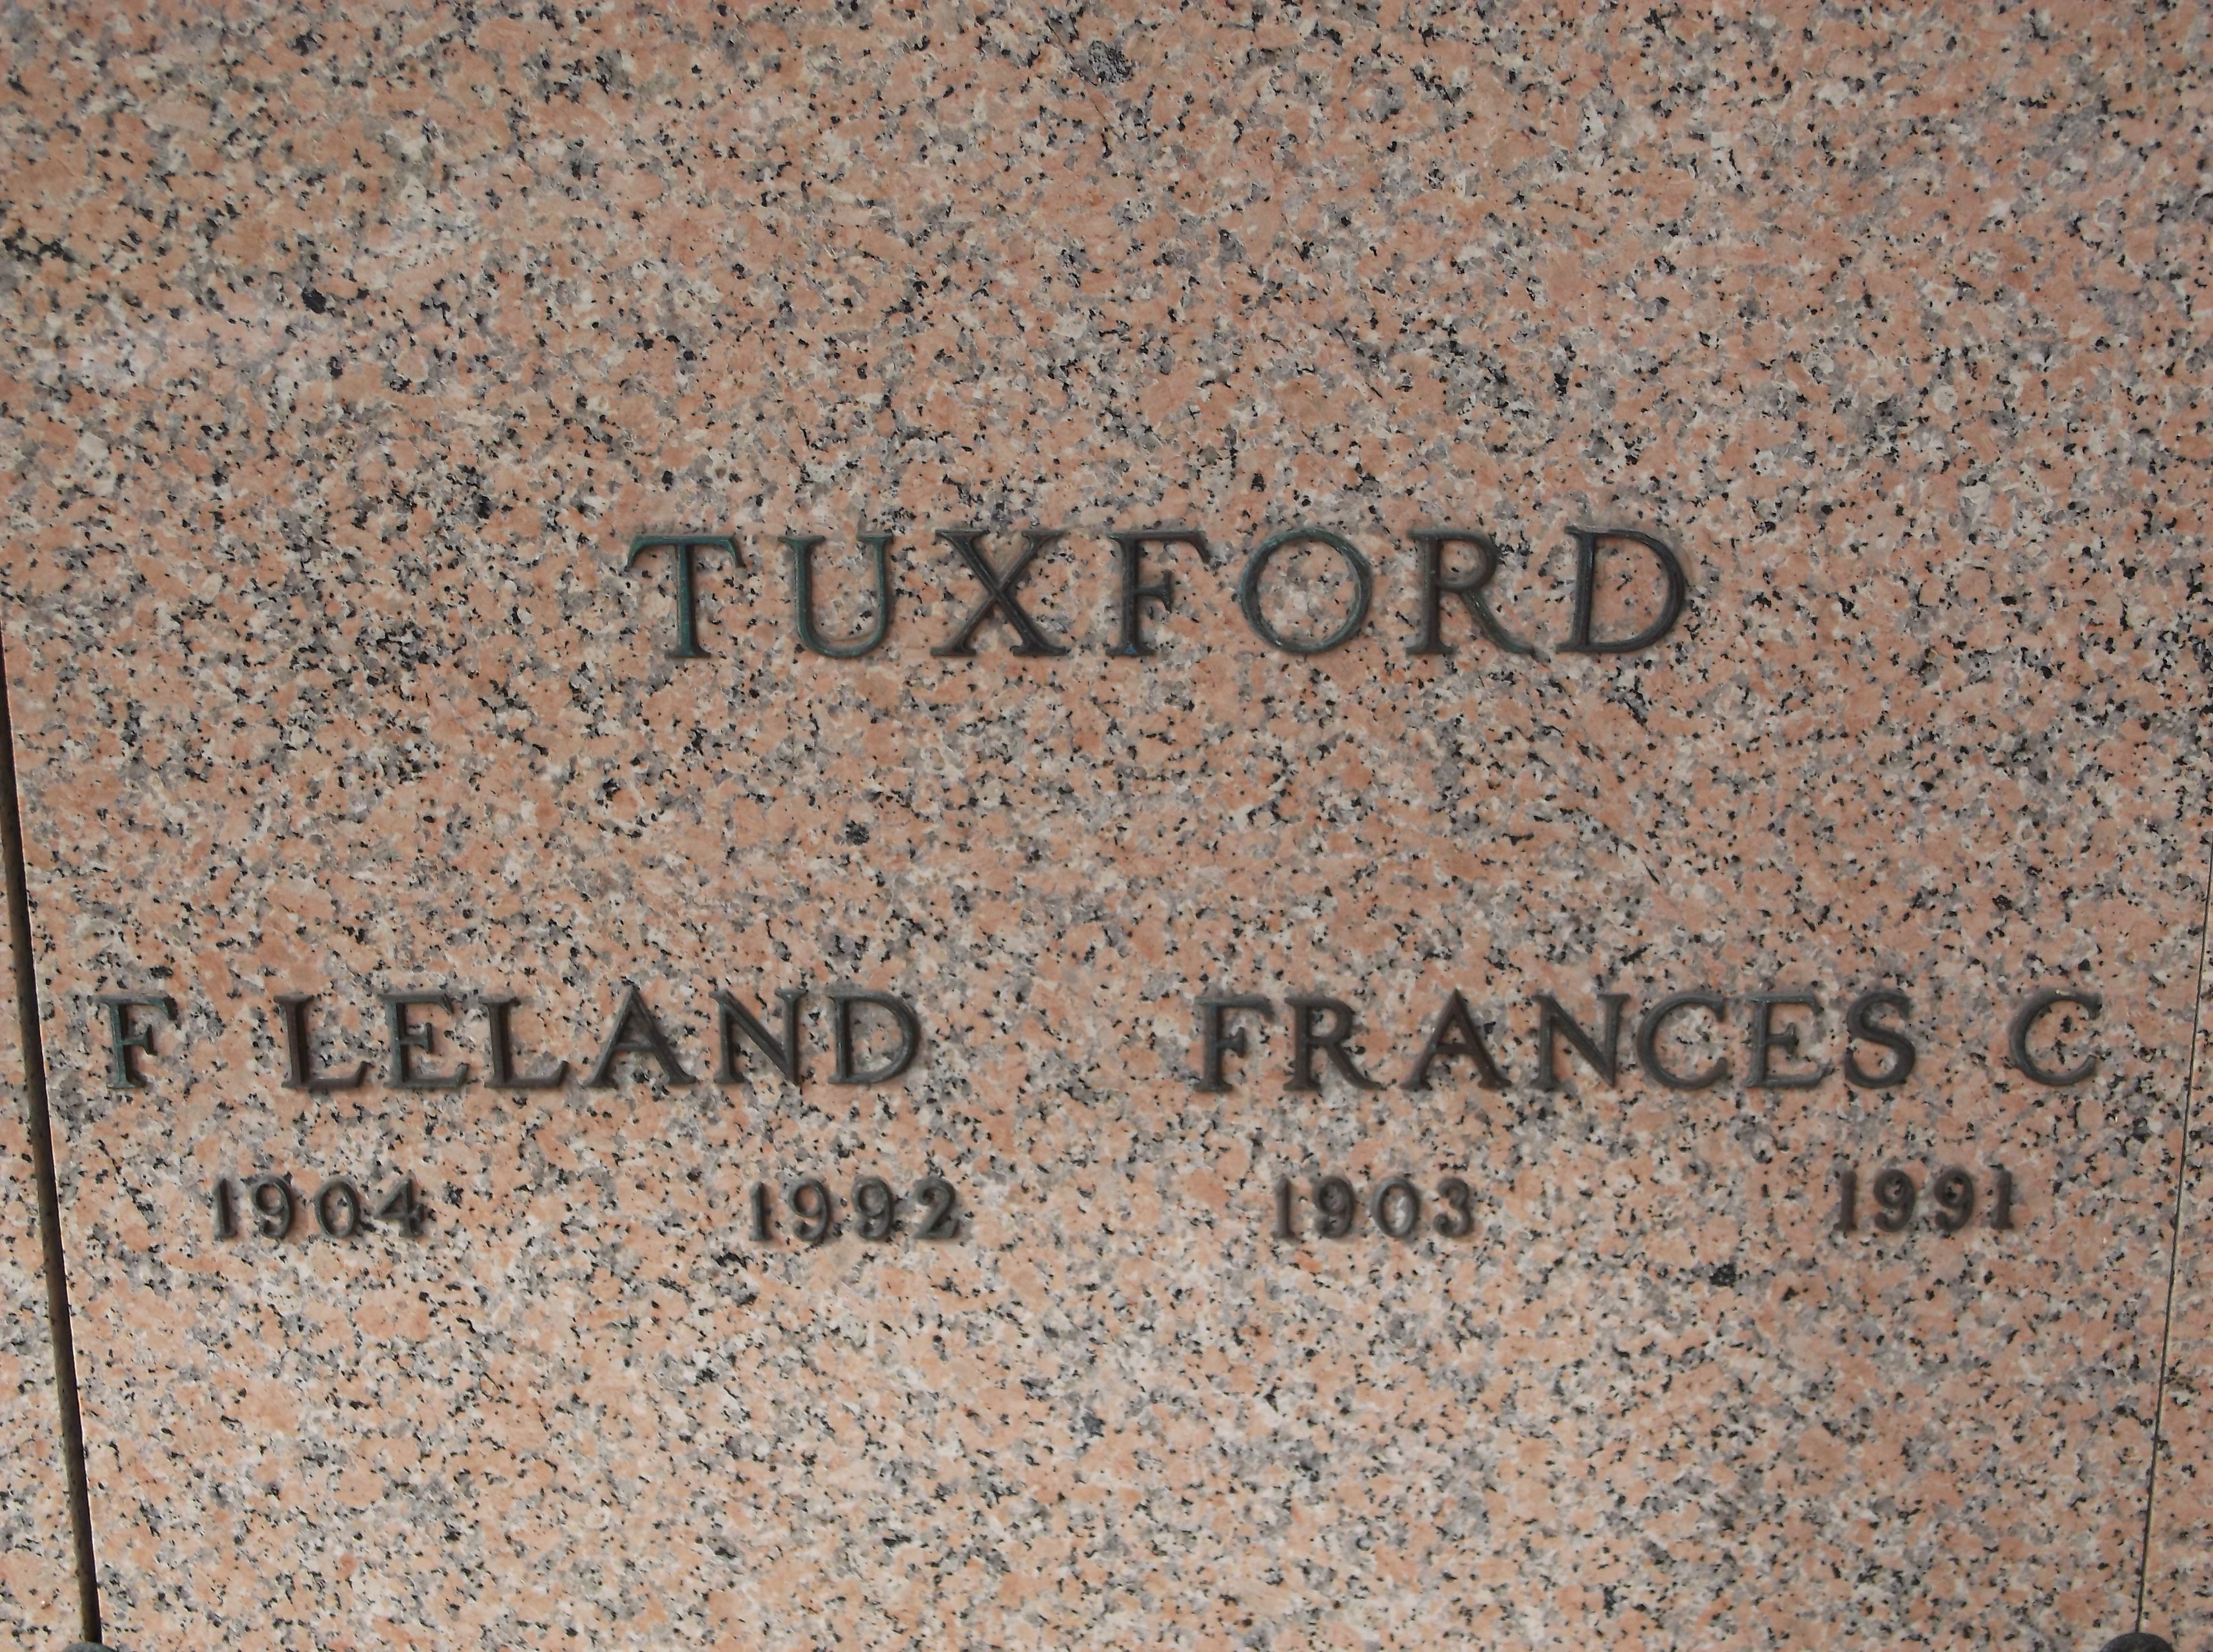 Frances C Tuxford